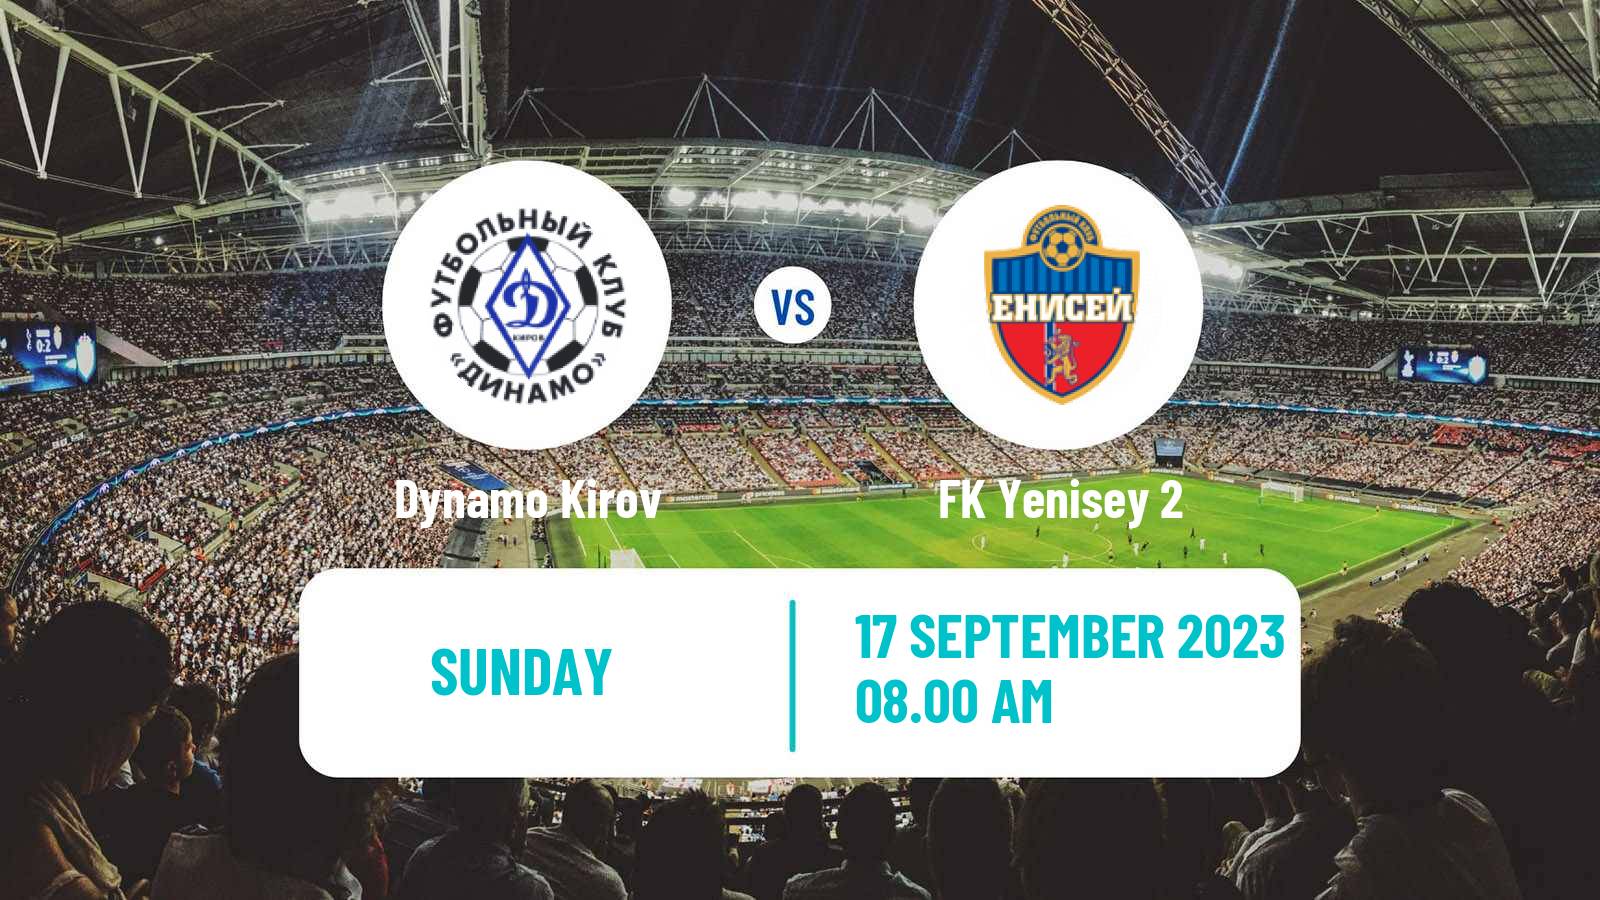 Soccer FNL 2 Division B Group 2 Dynamo Kirov - Yenisey 2